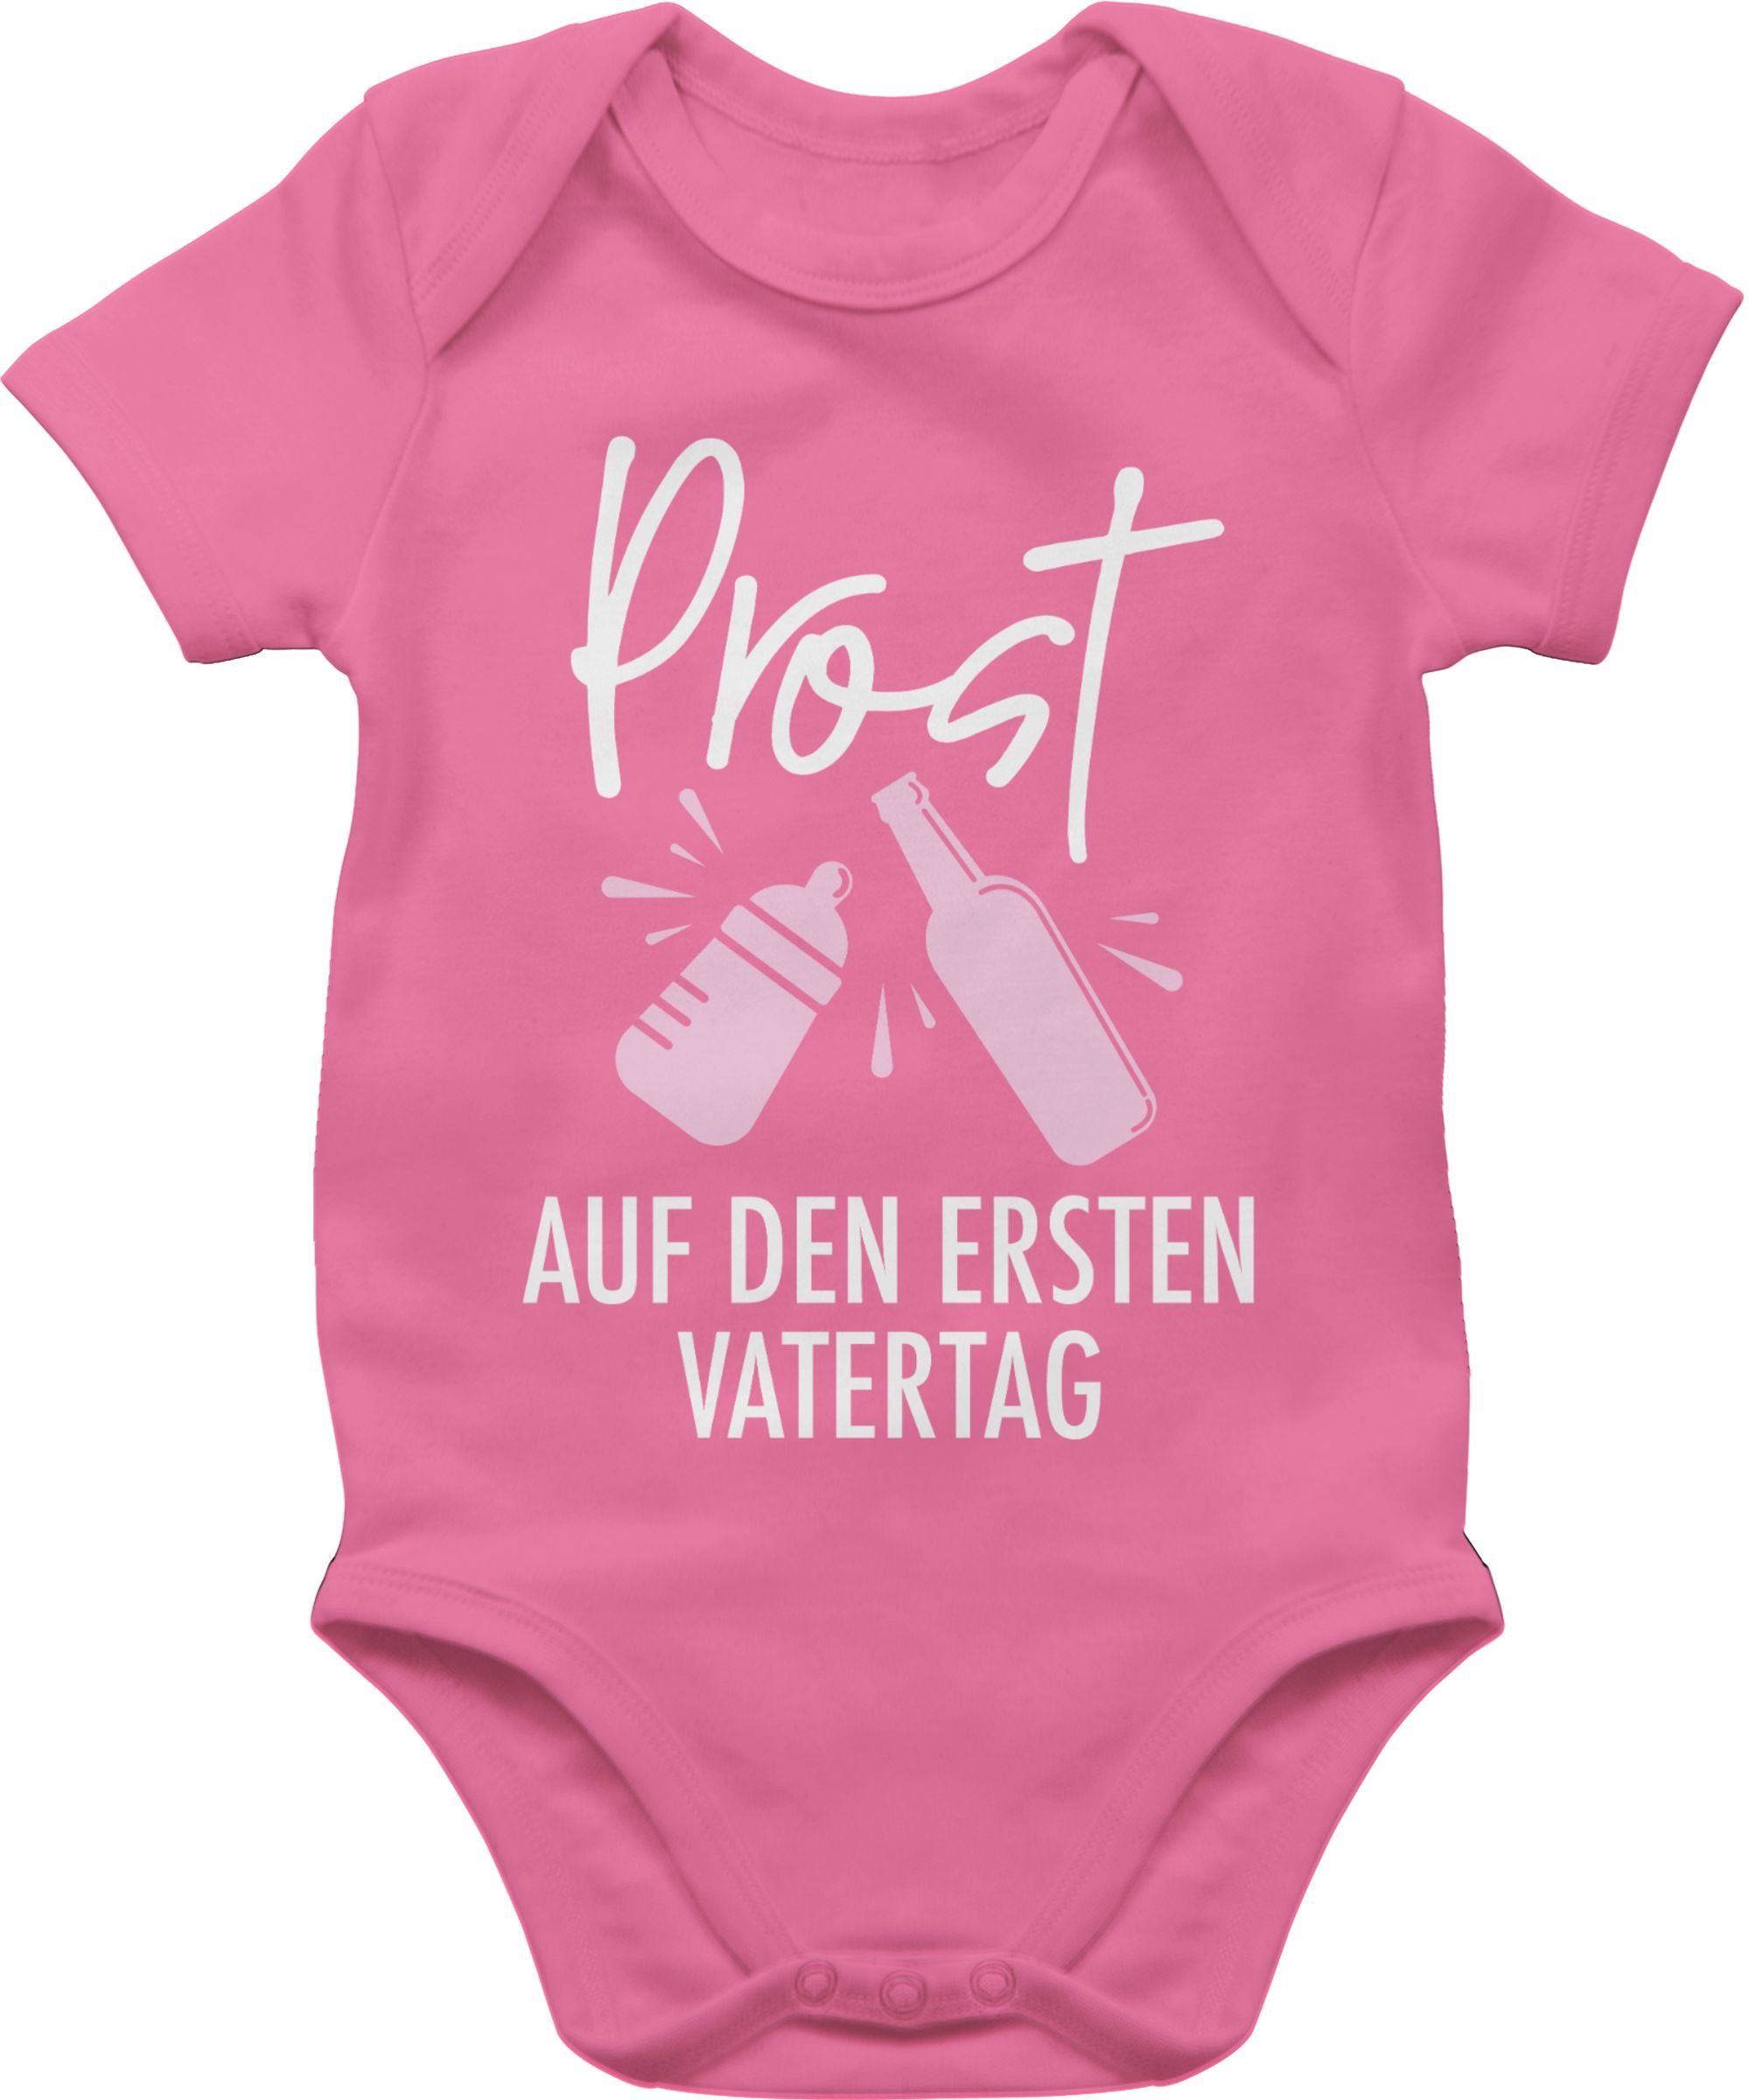 weiß/rosa Baby Geschenk Shirtbody auf Vatertag den - Shirtracer 2 Pink Prost ersten Vatertag